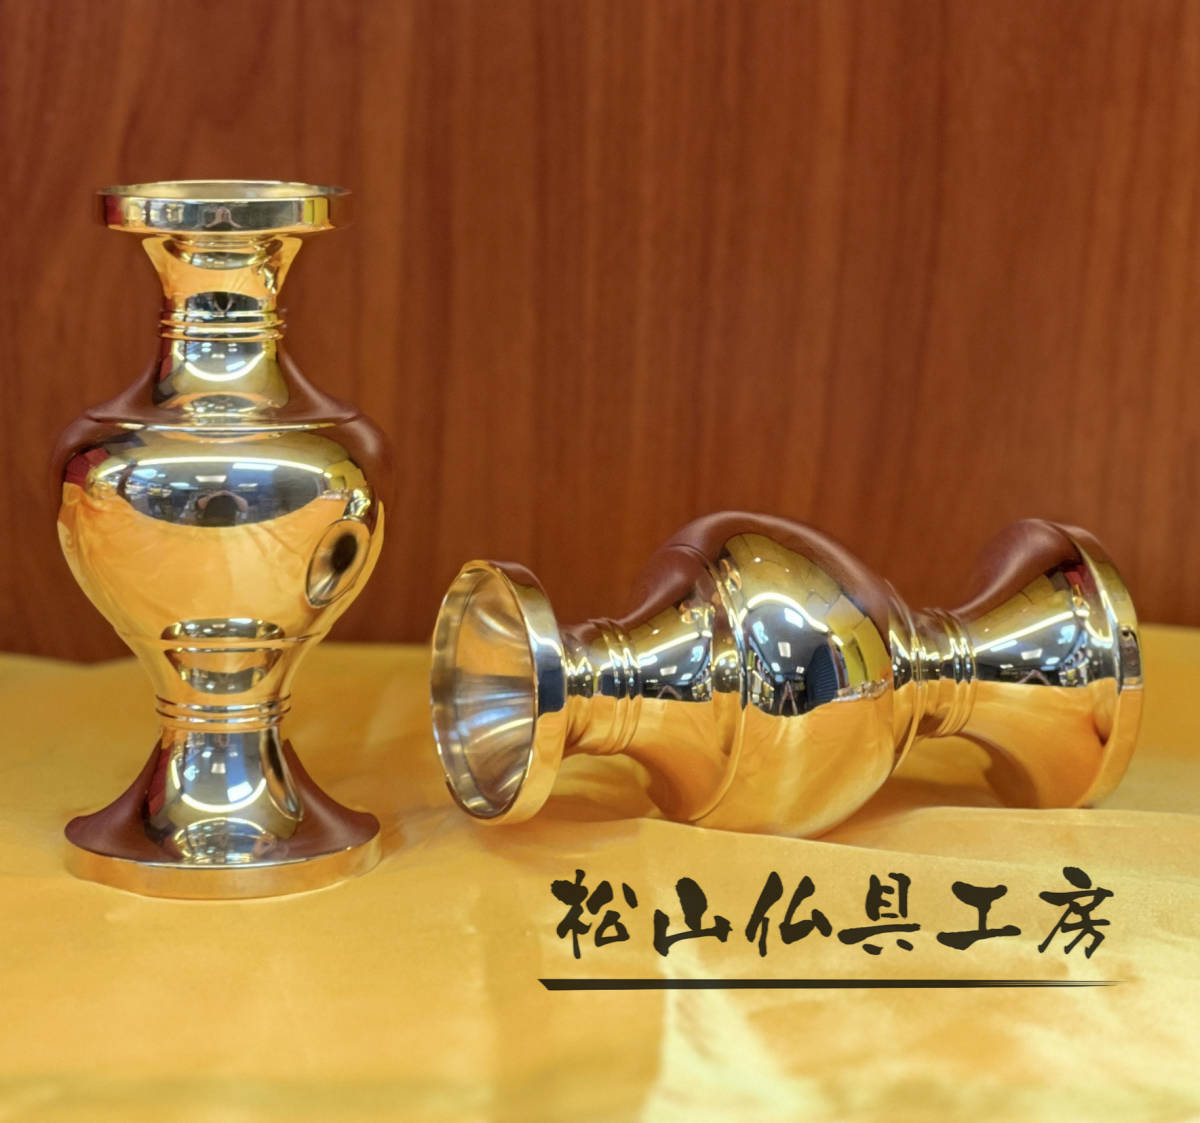 「松山仏具工房出品」古代形前具 真鍮製 平安型前具 華瓶 2点セット 大々